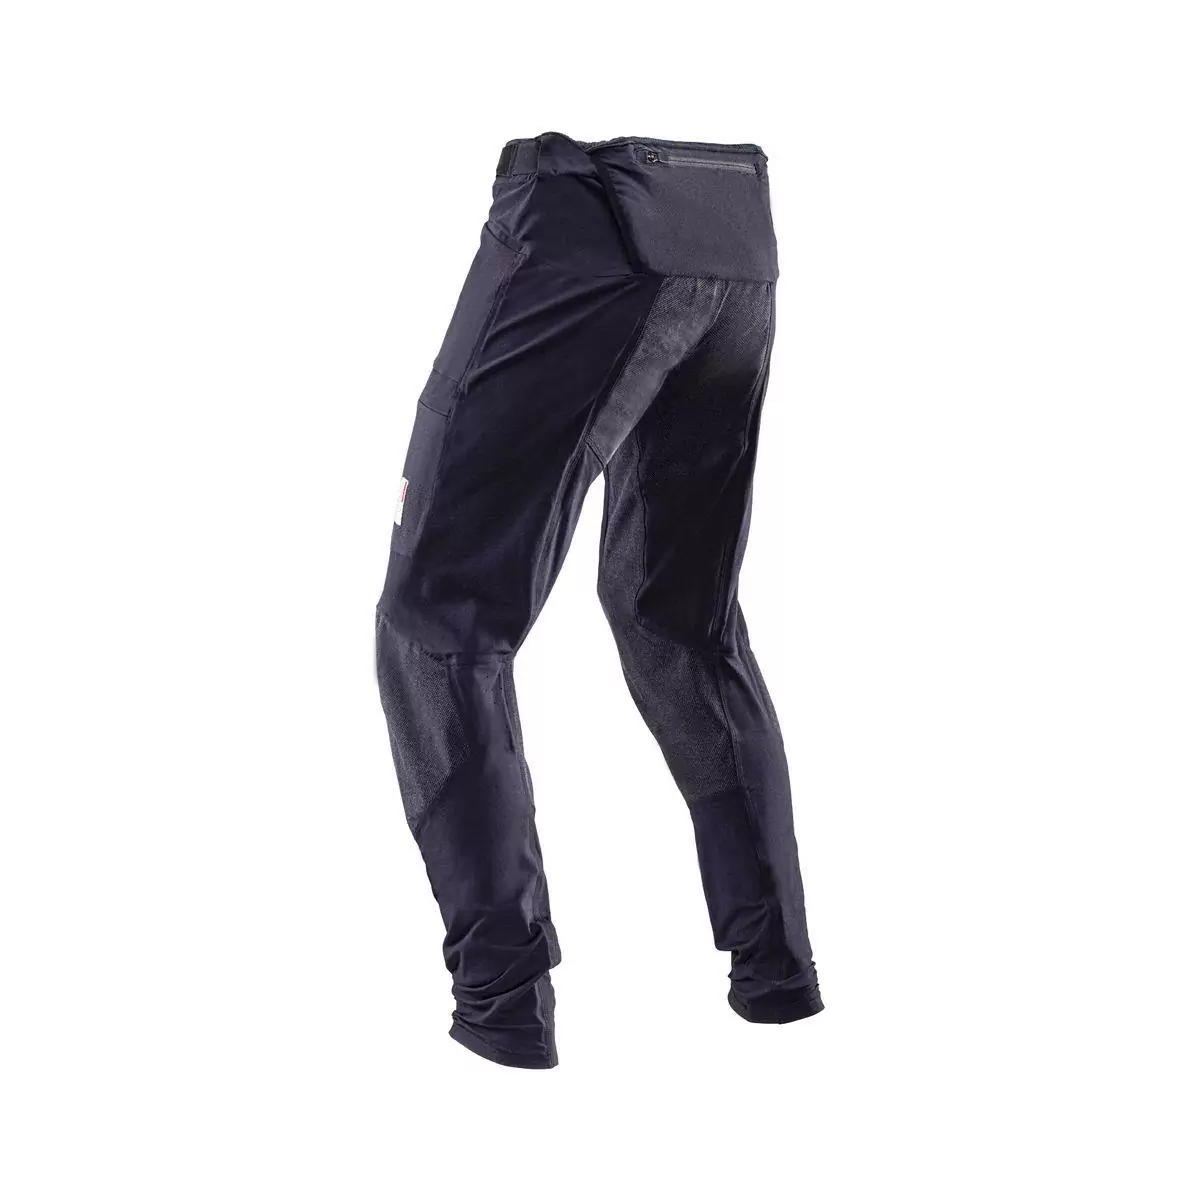 Pantalones MTB Allmtn 4.0 Largos Negro Talla XS #1